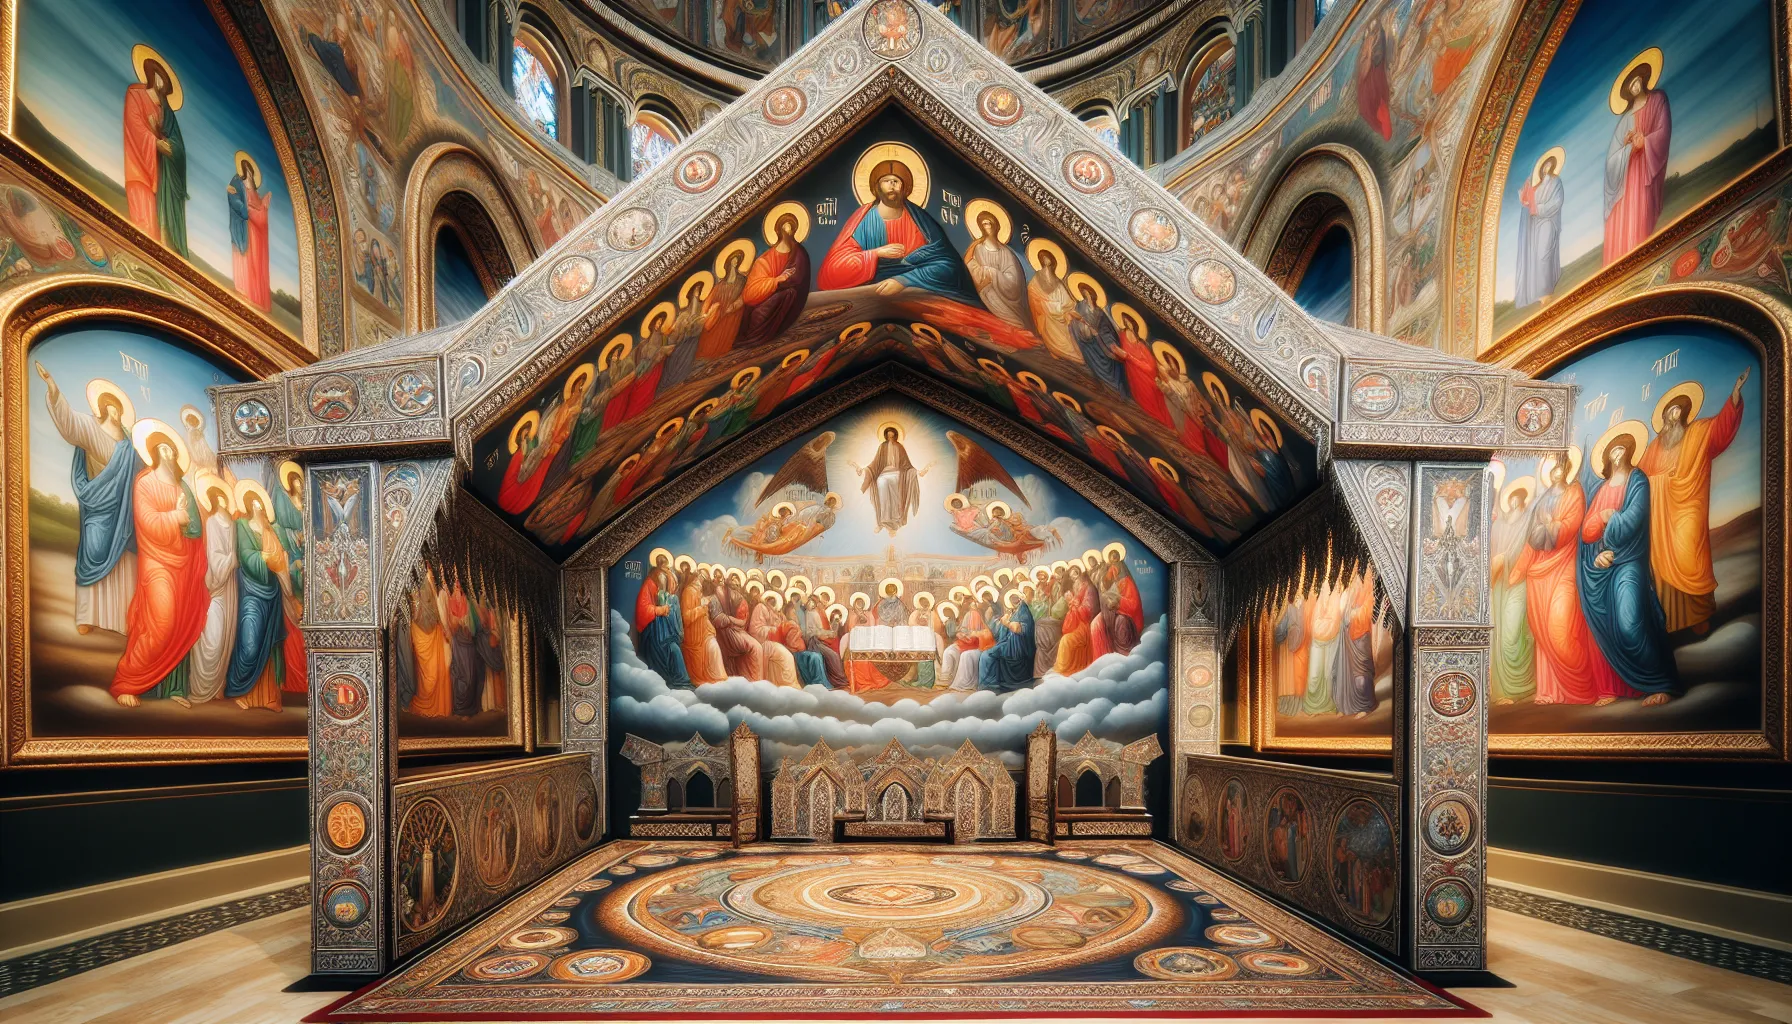 Imagen de un dosel bíblico decorado con motivos religiosos en una iglesia